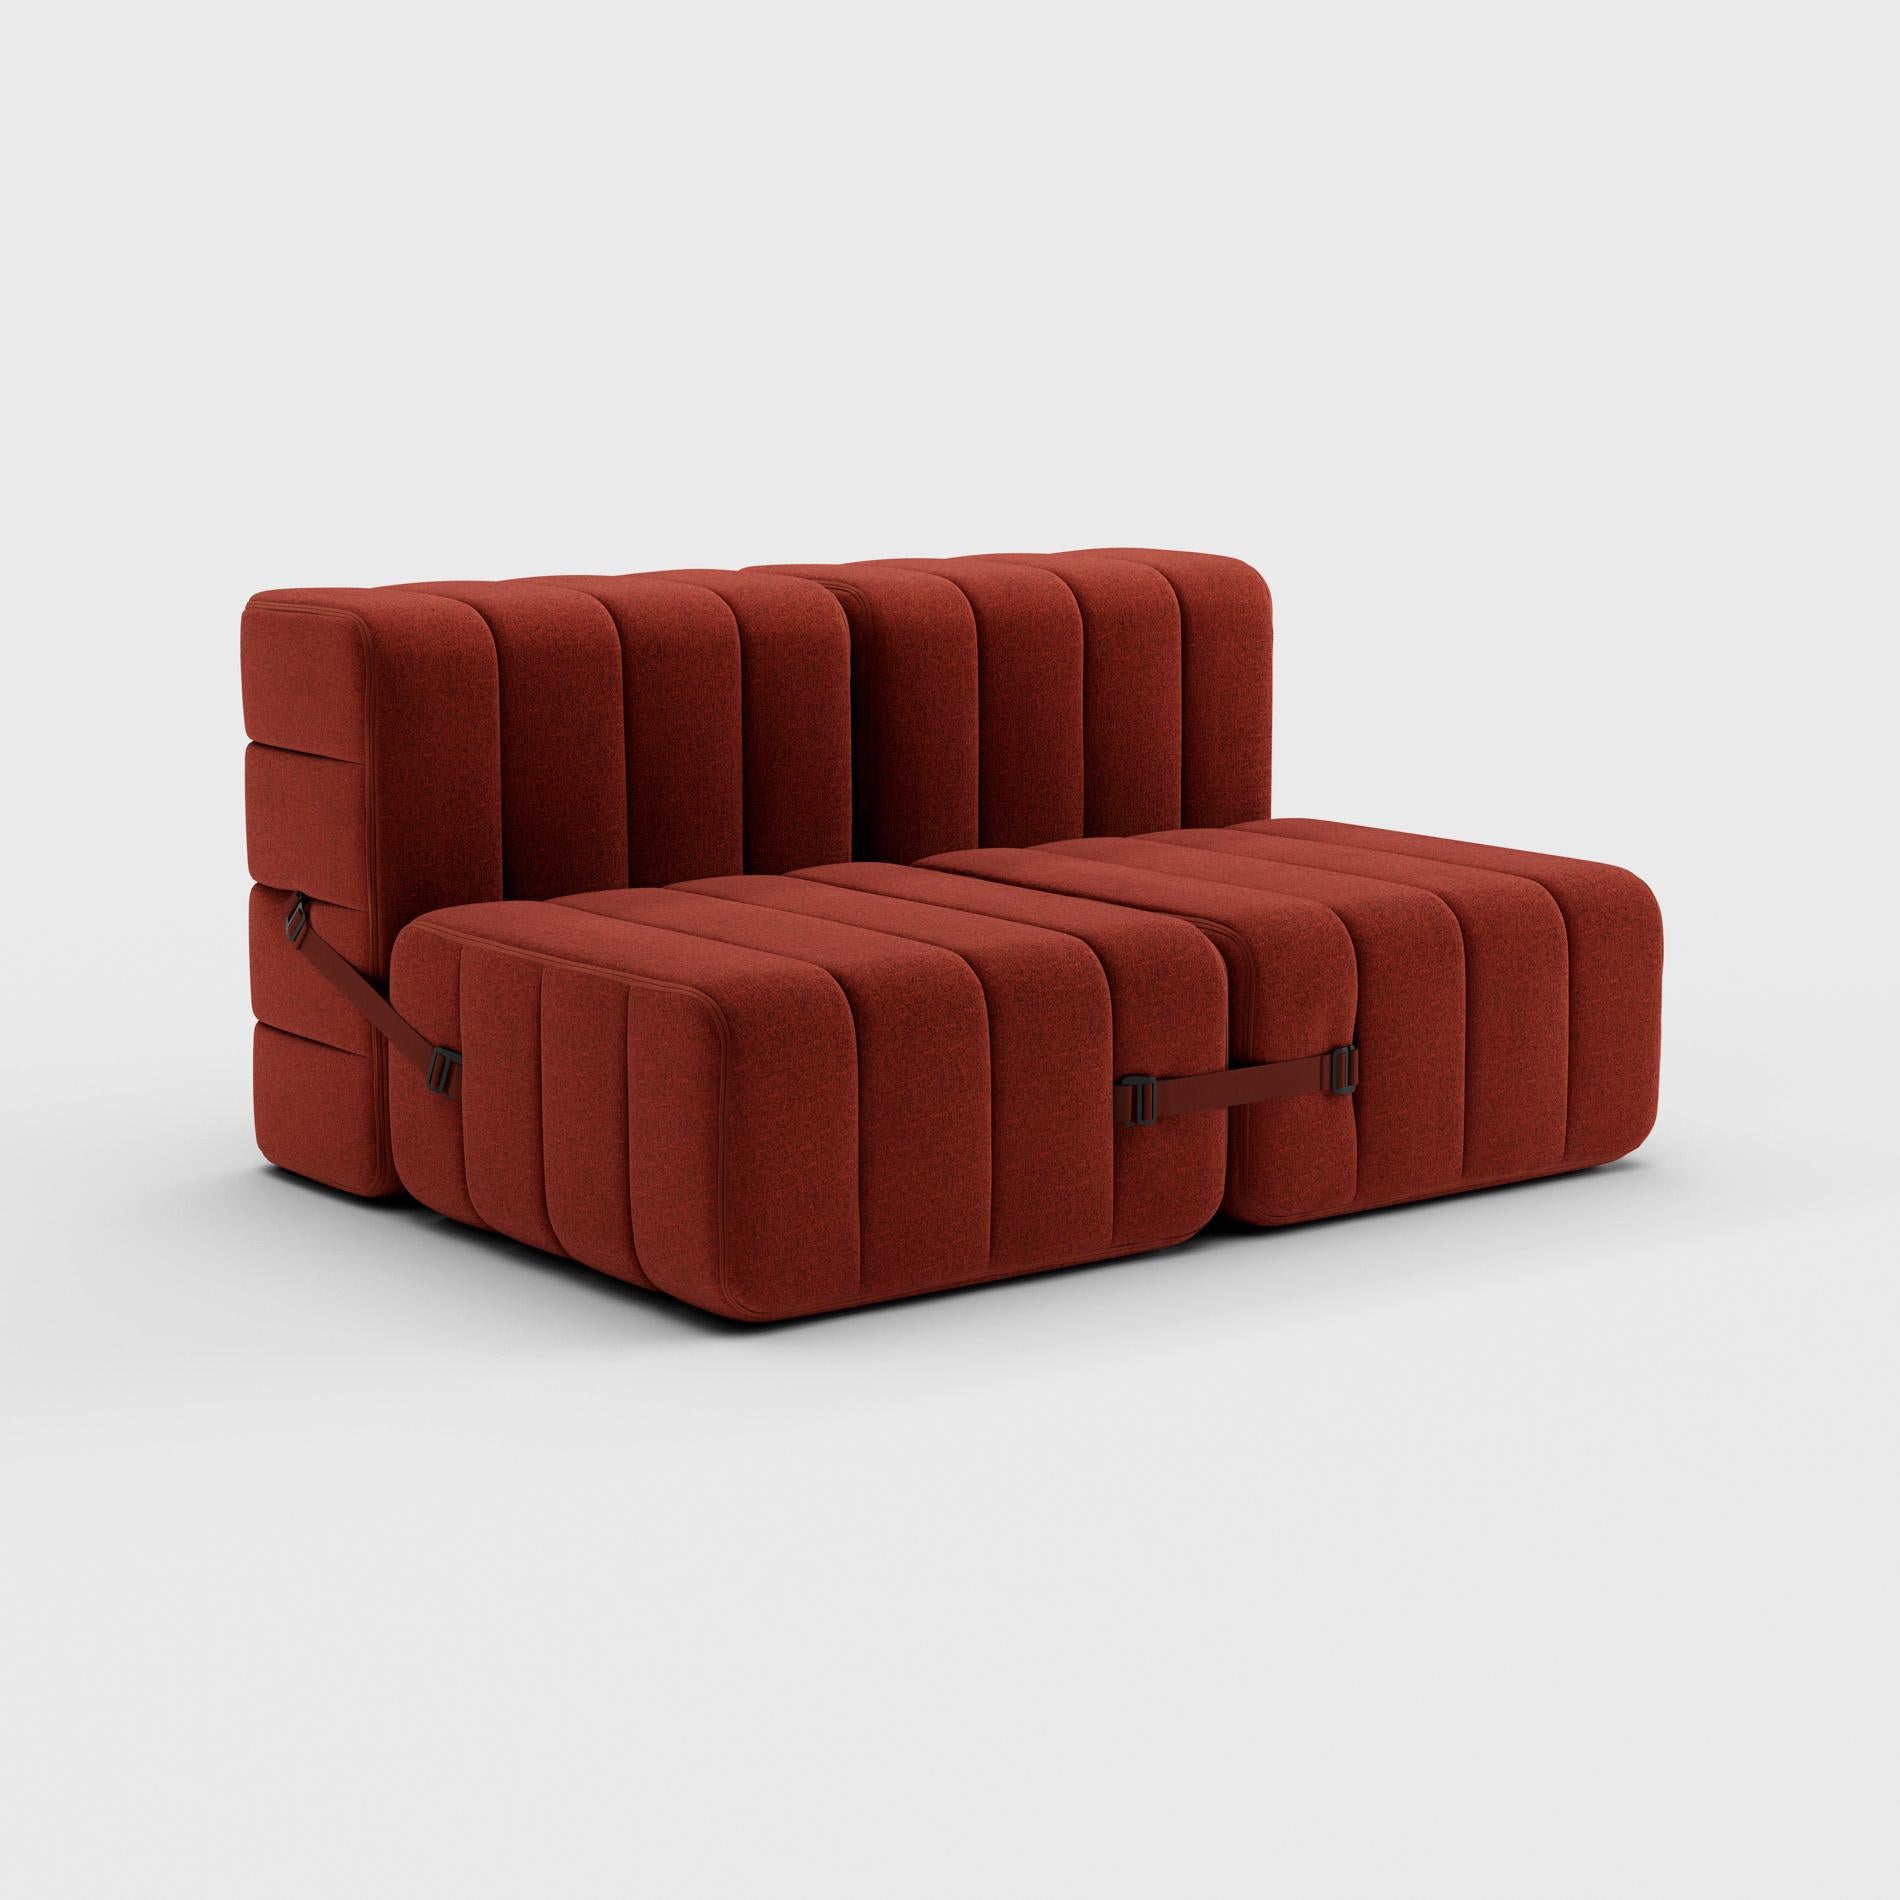 Modern Curt Single Module, Fabric Dama '0058 Red' - Curt Modular Sofa System For Sale